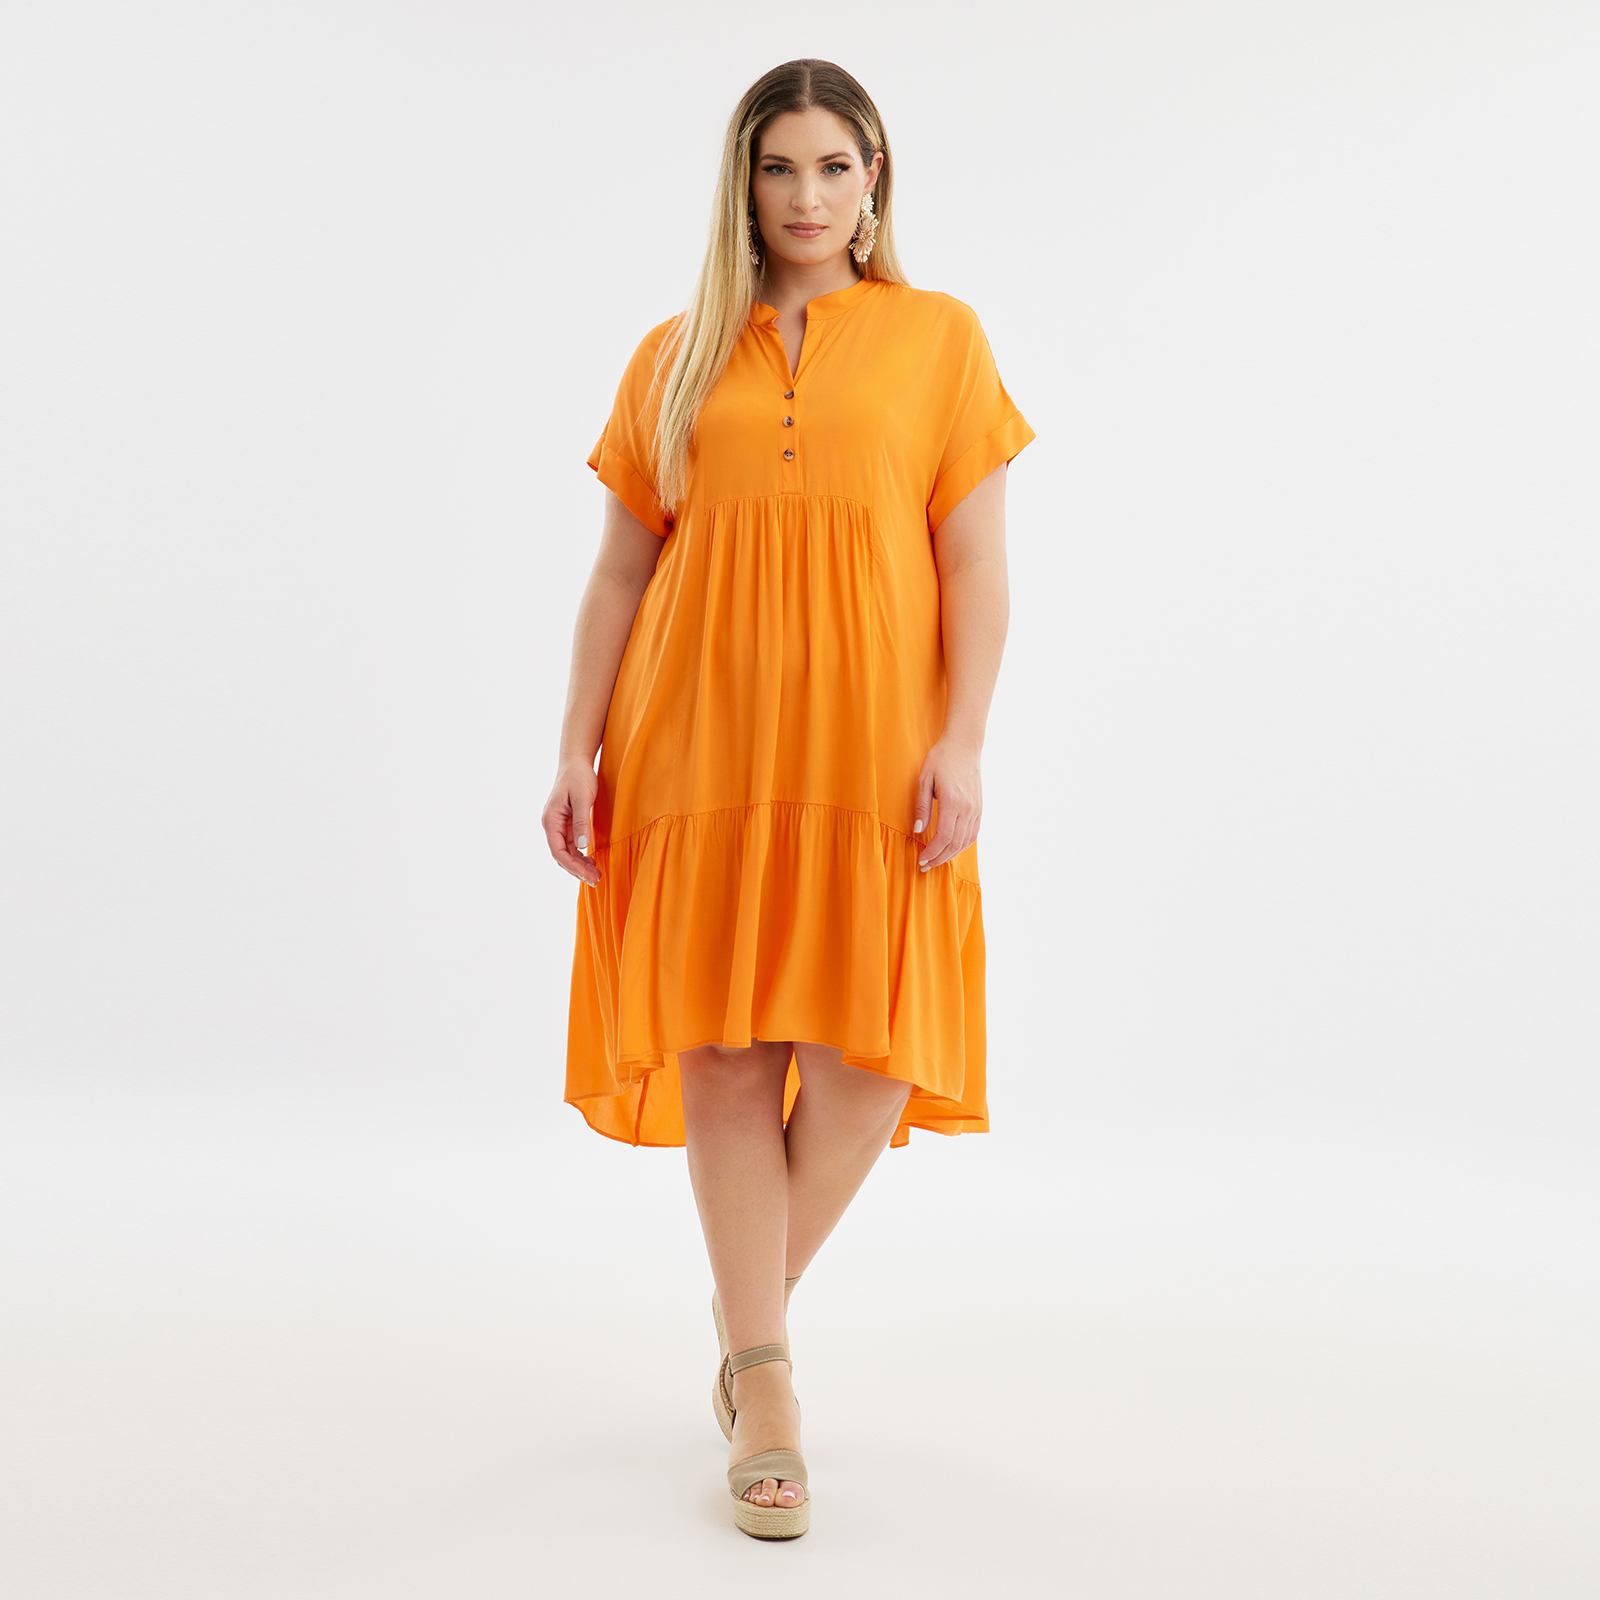 Φόρεμα βισκόζη με βολάν 8101.7207-orange